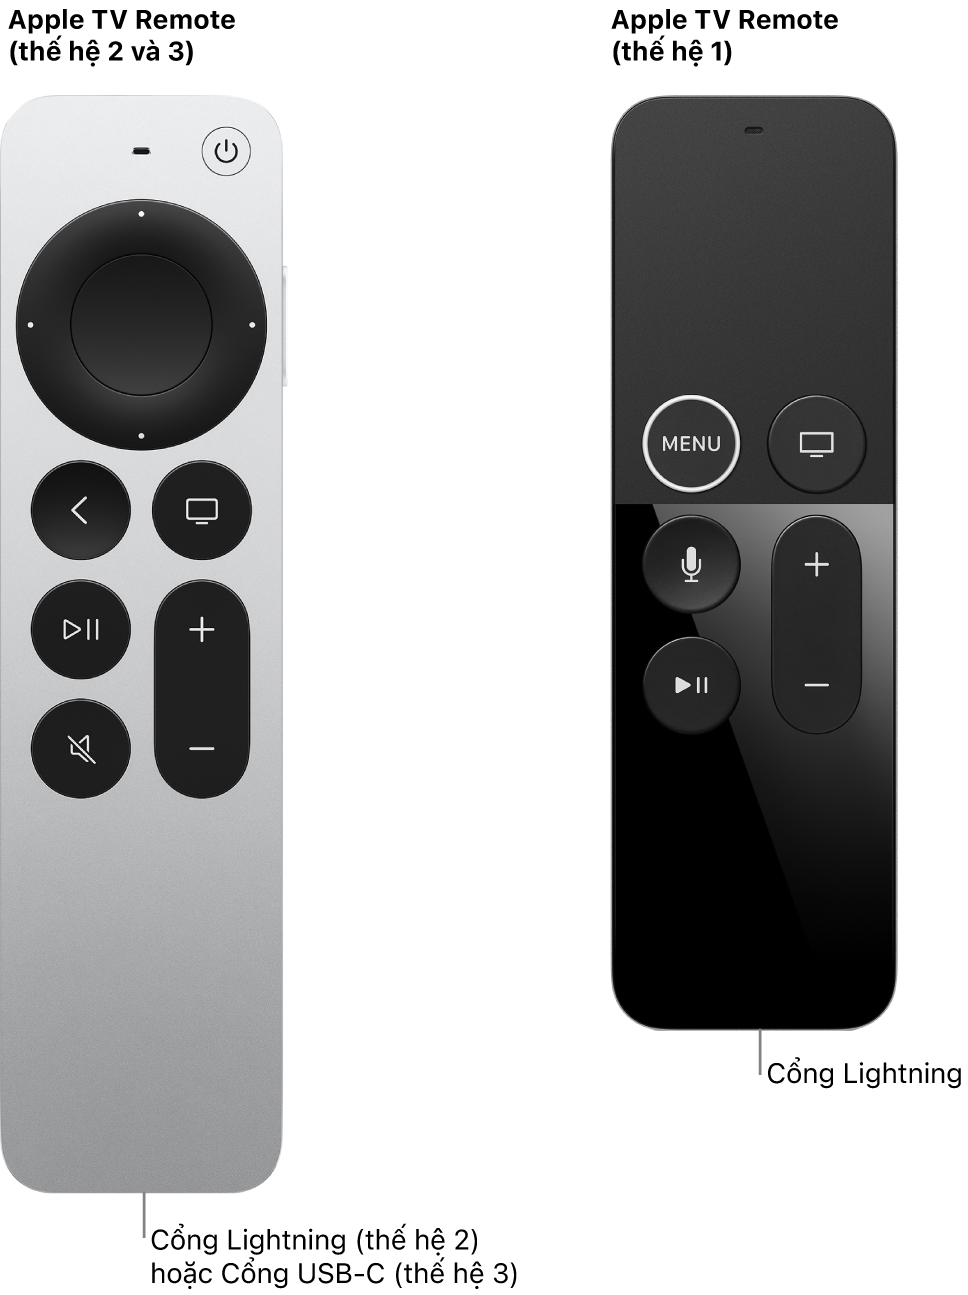 Hình ảnh của Apple TV Remote (thế hệ 2) và Apple TV Remote (thế hệ 1) đang hiển thị cổng Lightning